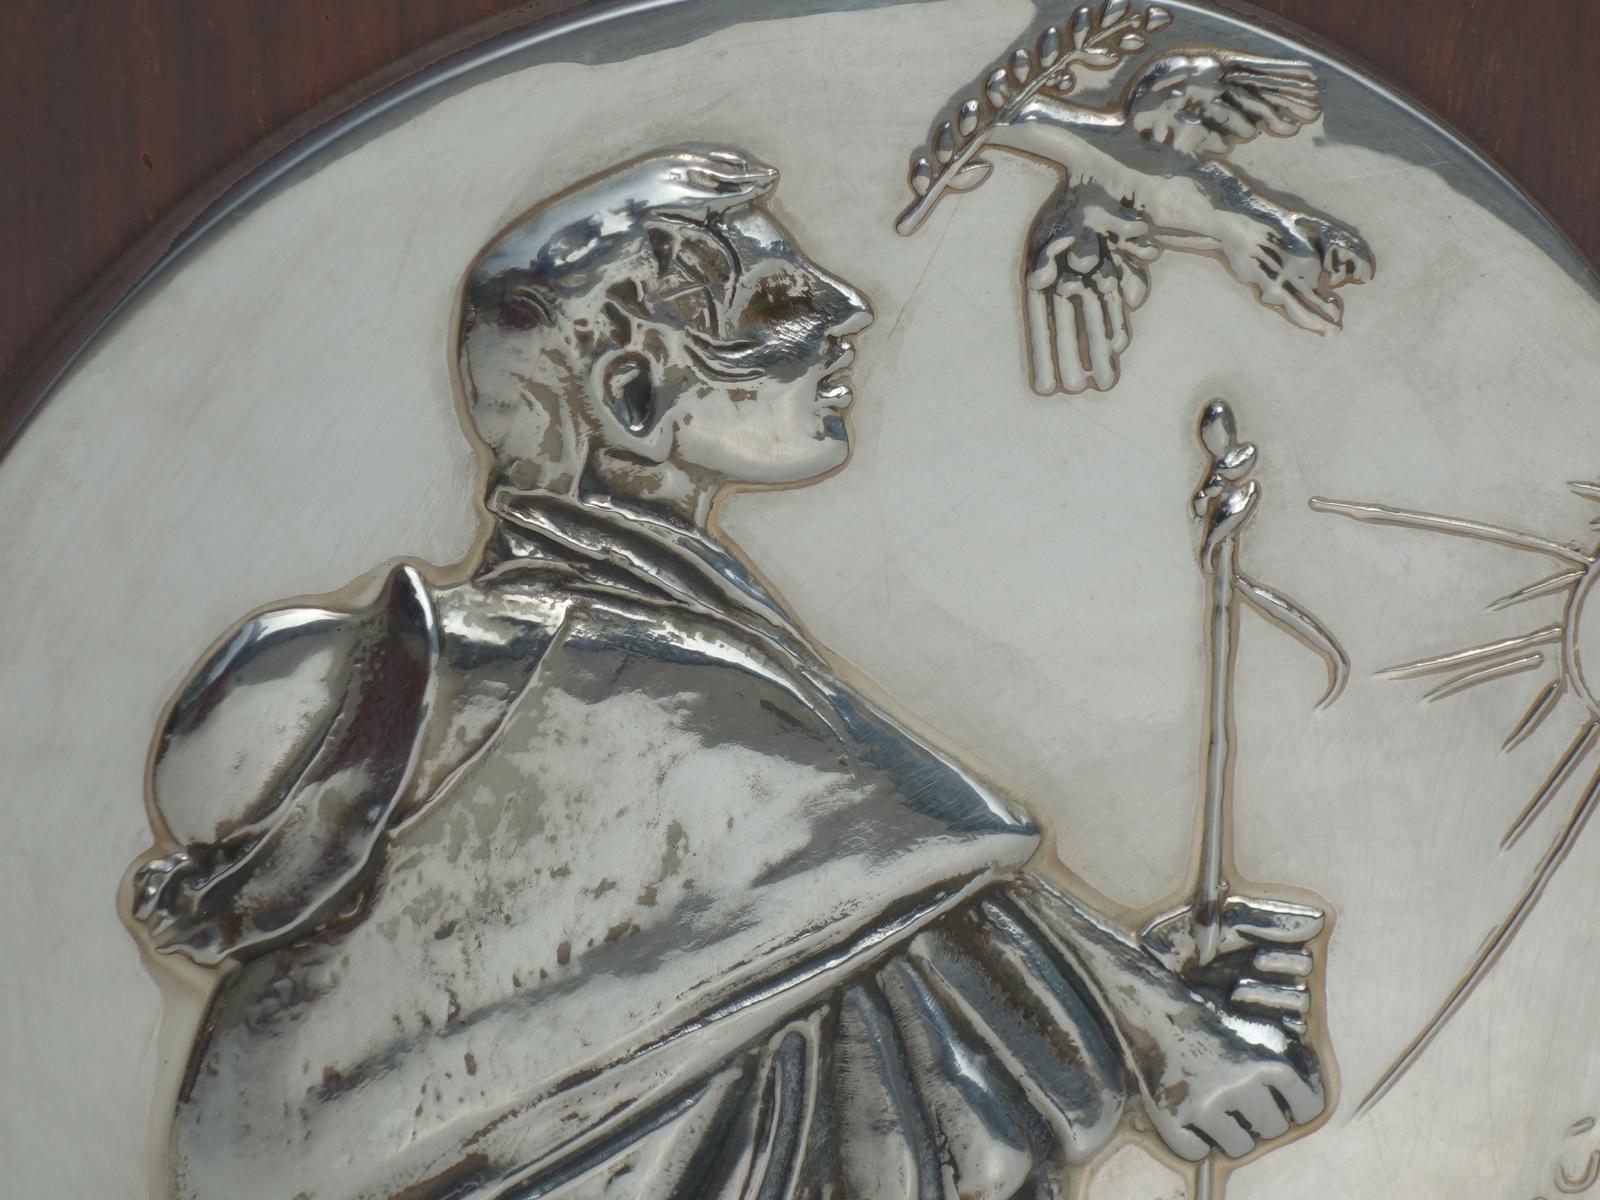 Giacomo Manzù, 1975
Relief en argent du légendaire sculpteur italien Giacomo Manzù. Cette pièce rare a été fabriquée par The Franklin Mint du vivant de l'artiste et est un moulage autorisé. 20cm de diamètre, signée à l'incise, en argent sterling